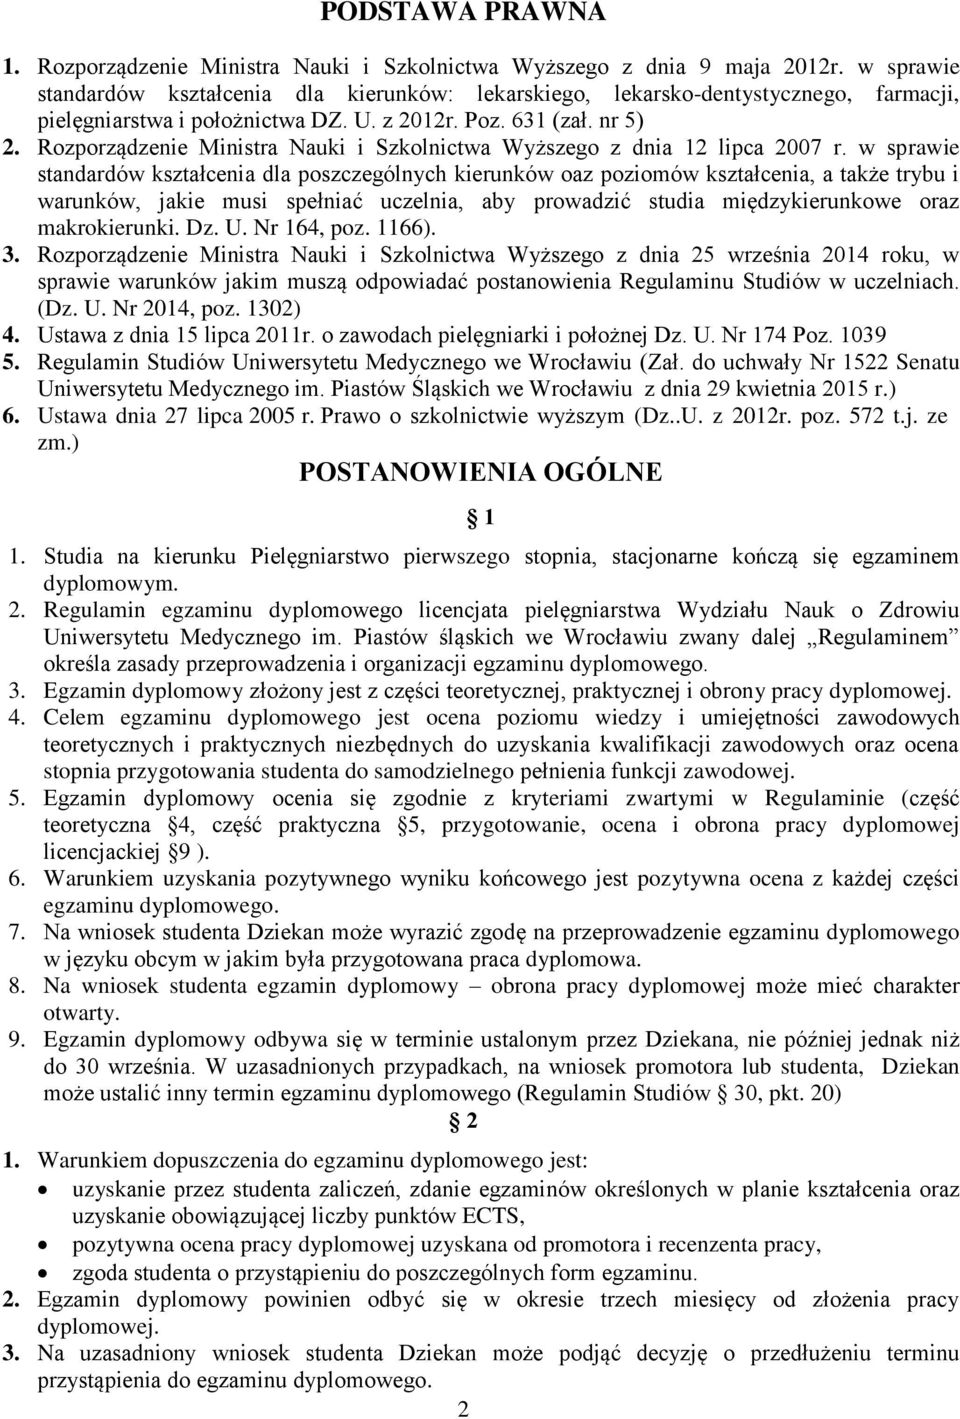 Rozporządzenie Ministra Nauki i Szkolnictwa Wyższego z dnia 12 lipca 2007 r.